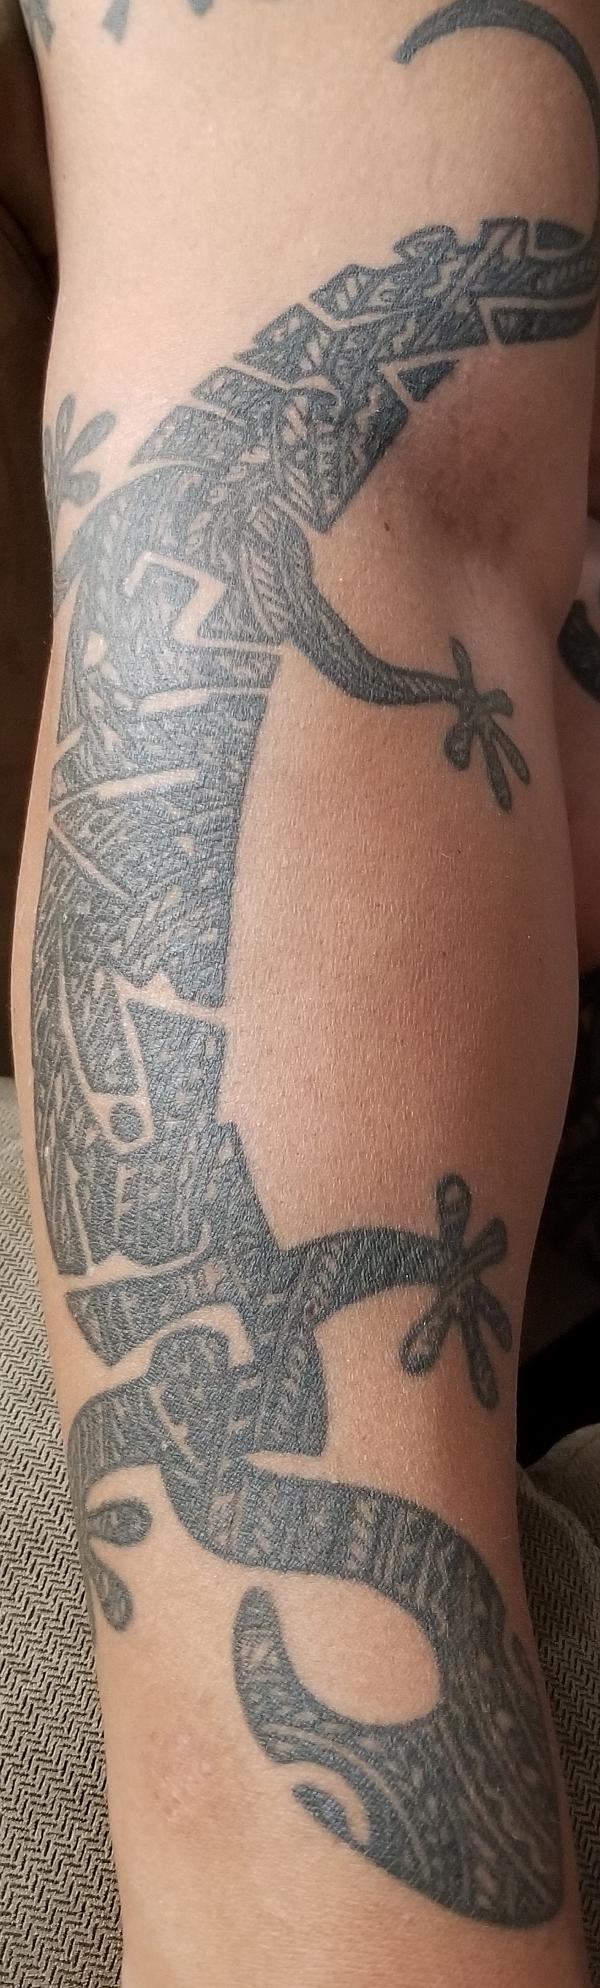 Lomi - Peninatautele tattoo photo